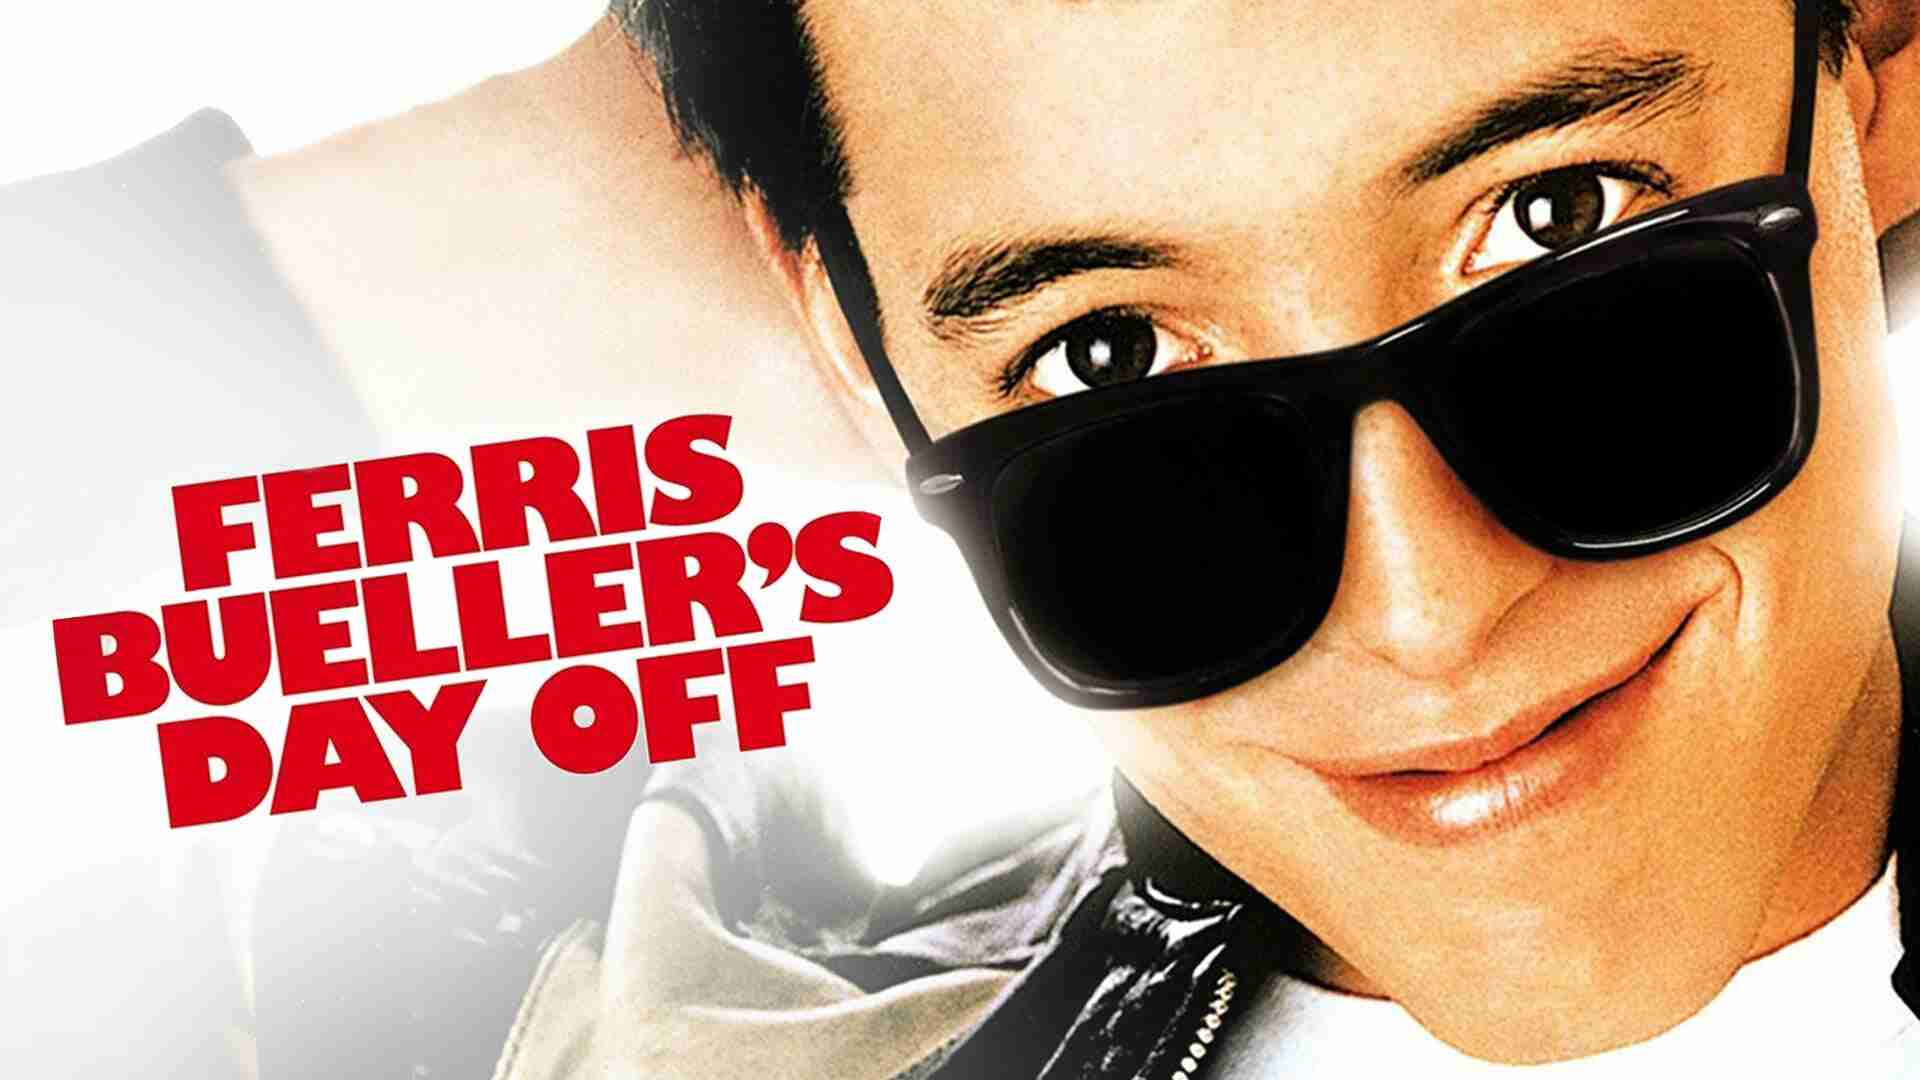  Ferris Buellers Day Off Ferris Buellers Day Off ist eine amerikanische Filmkomödie aus dem Jahr 1986, die von John Hughes geschrieben und inszeniert wurde. Der Film handelt von einem High-School-Schüler namens Ferris Bueller, der einen Tag lang die Schule schwänzt und stattdessen mit seinen Freunden einen aufregenden Tag in der Stadt verbringt. Der Film wurde zu einem Kultklass 